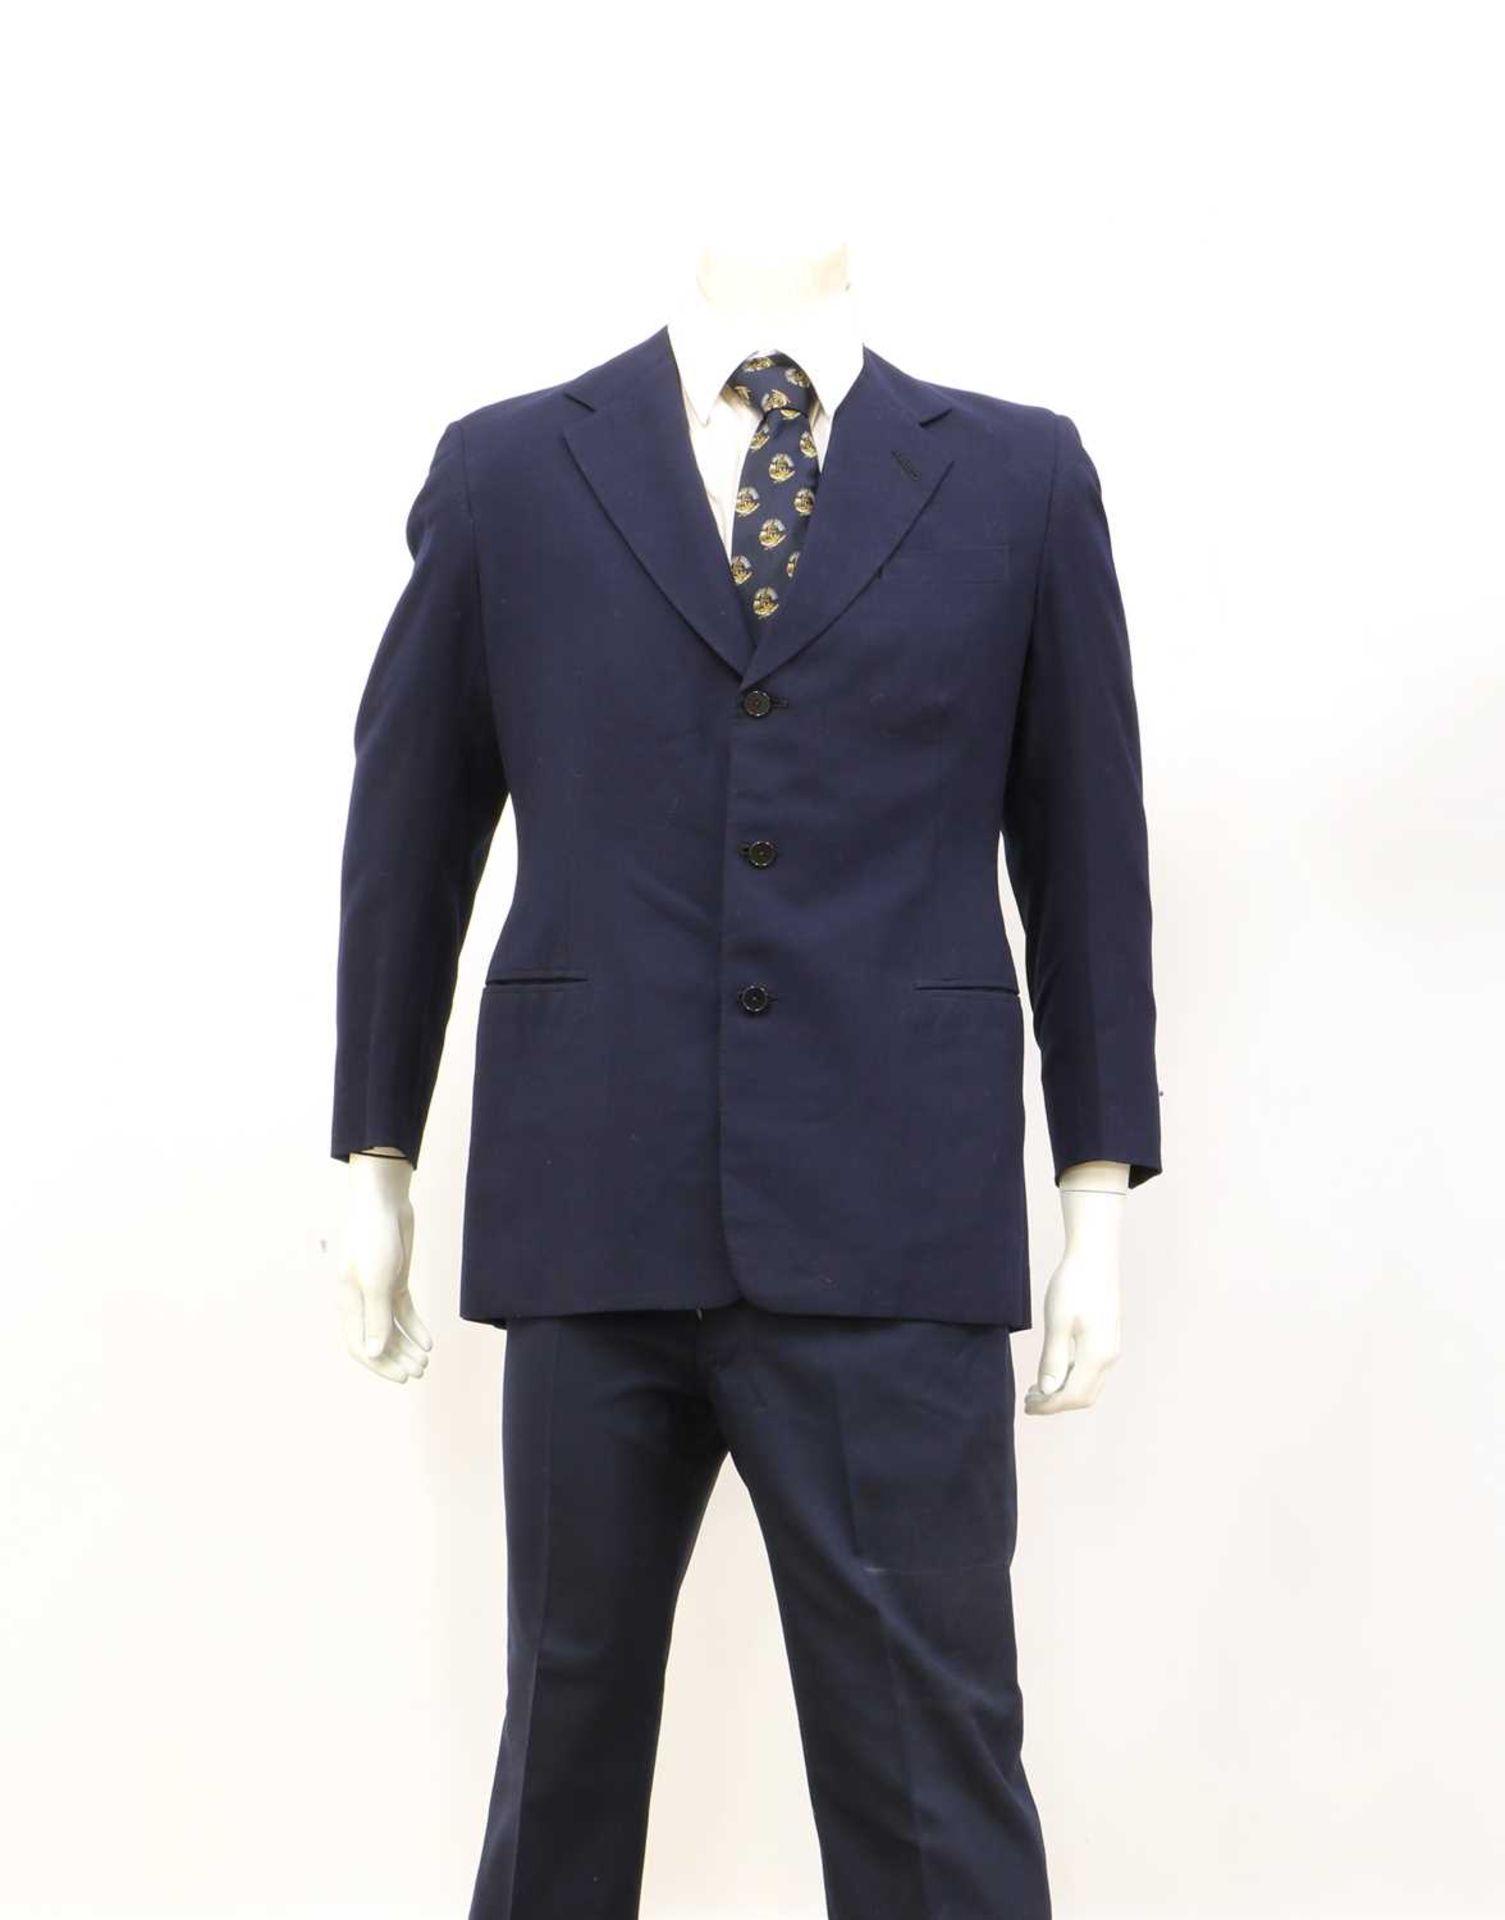 Four suits by Stovel & Mason Ltd.,